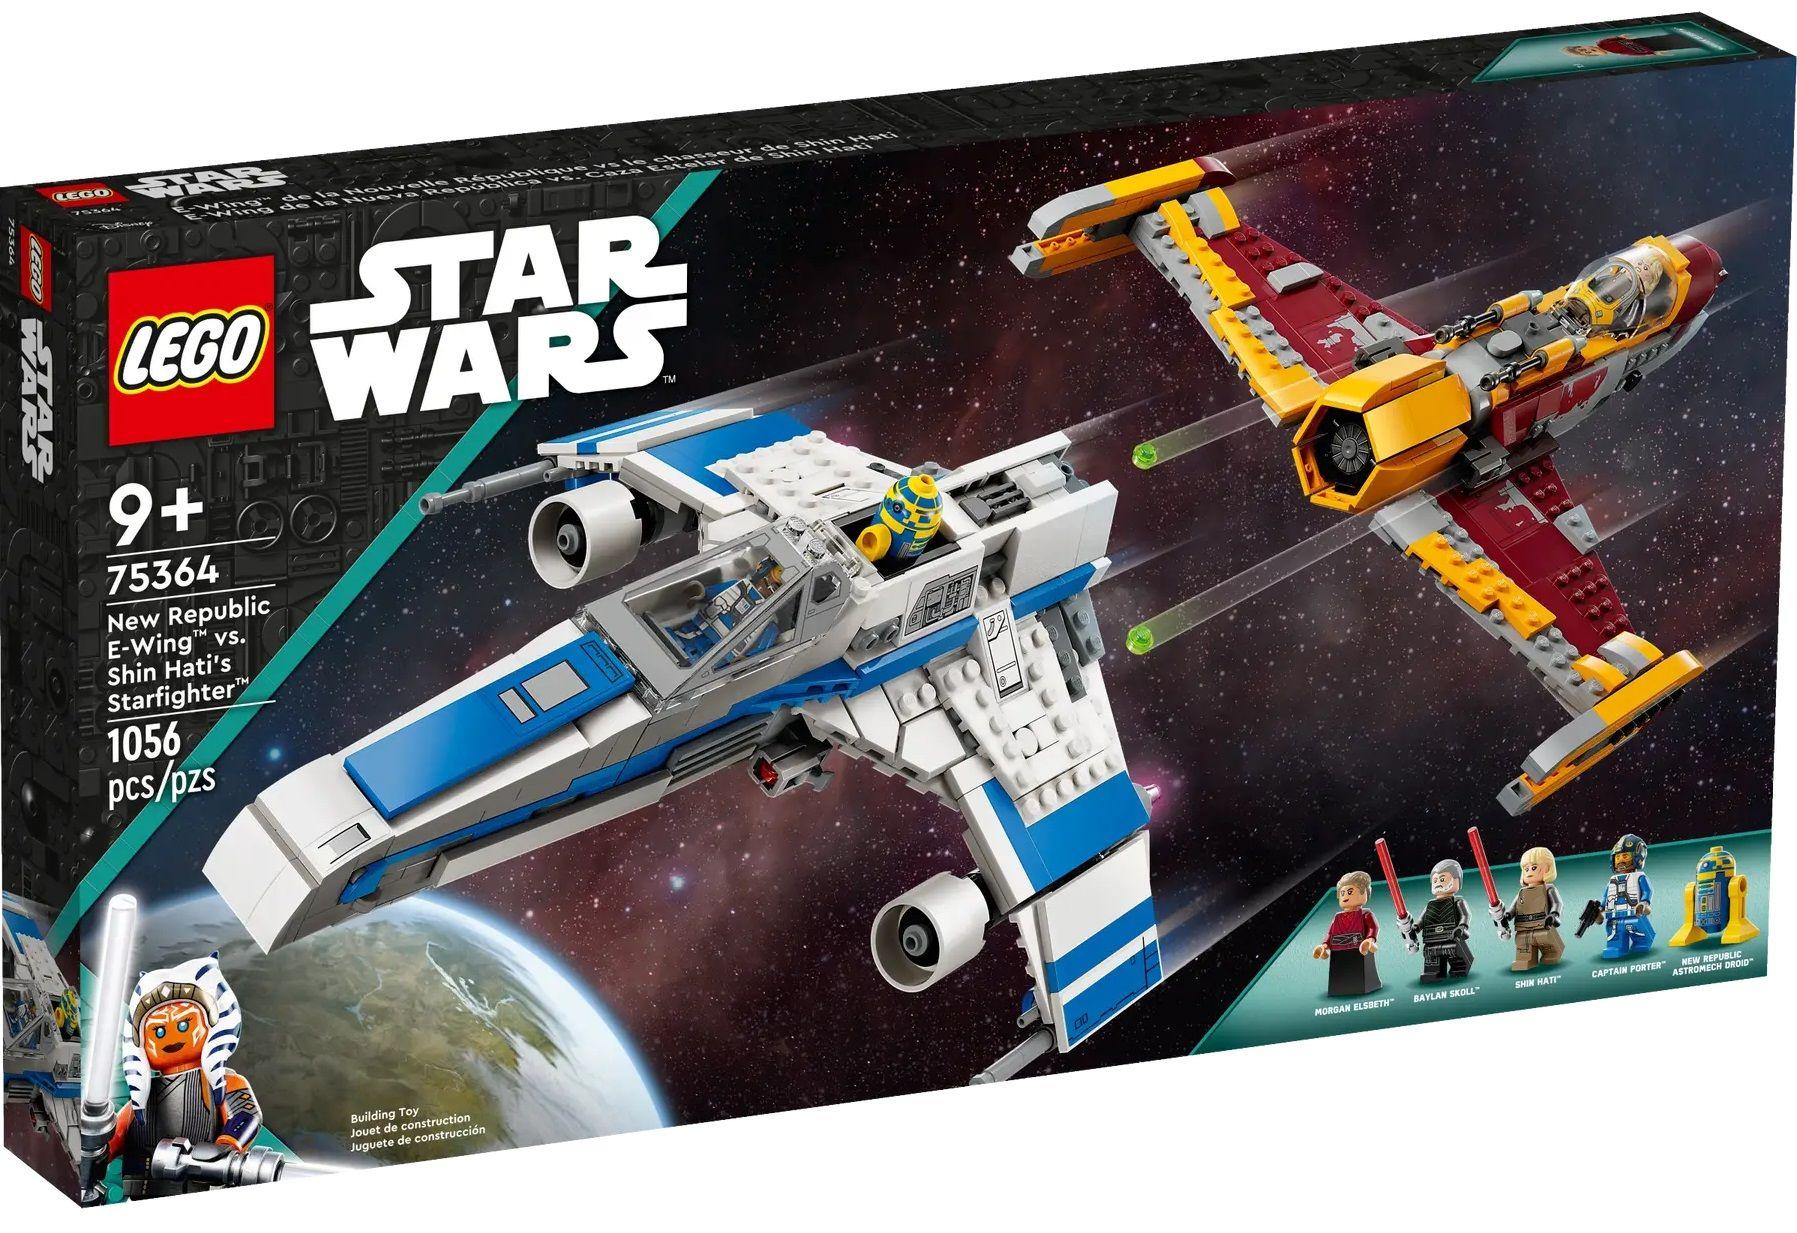 LEGO Star Wars - New Republic E-Wing vs. Shin Hati&rsquo;s Starfighter - 75364